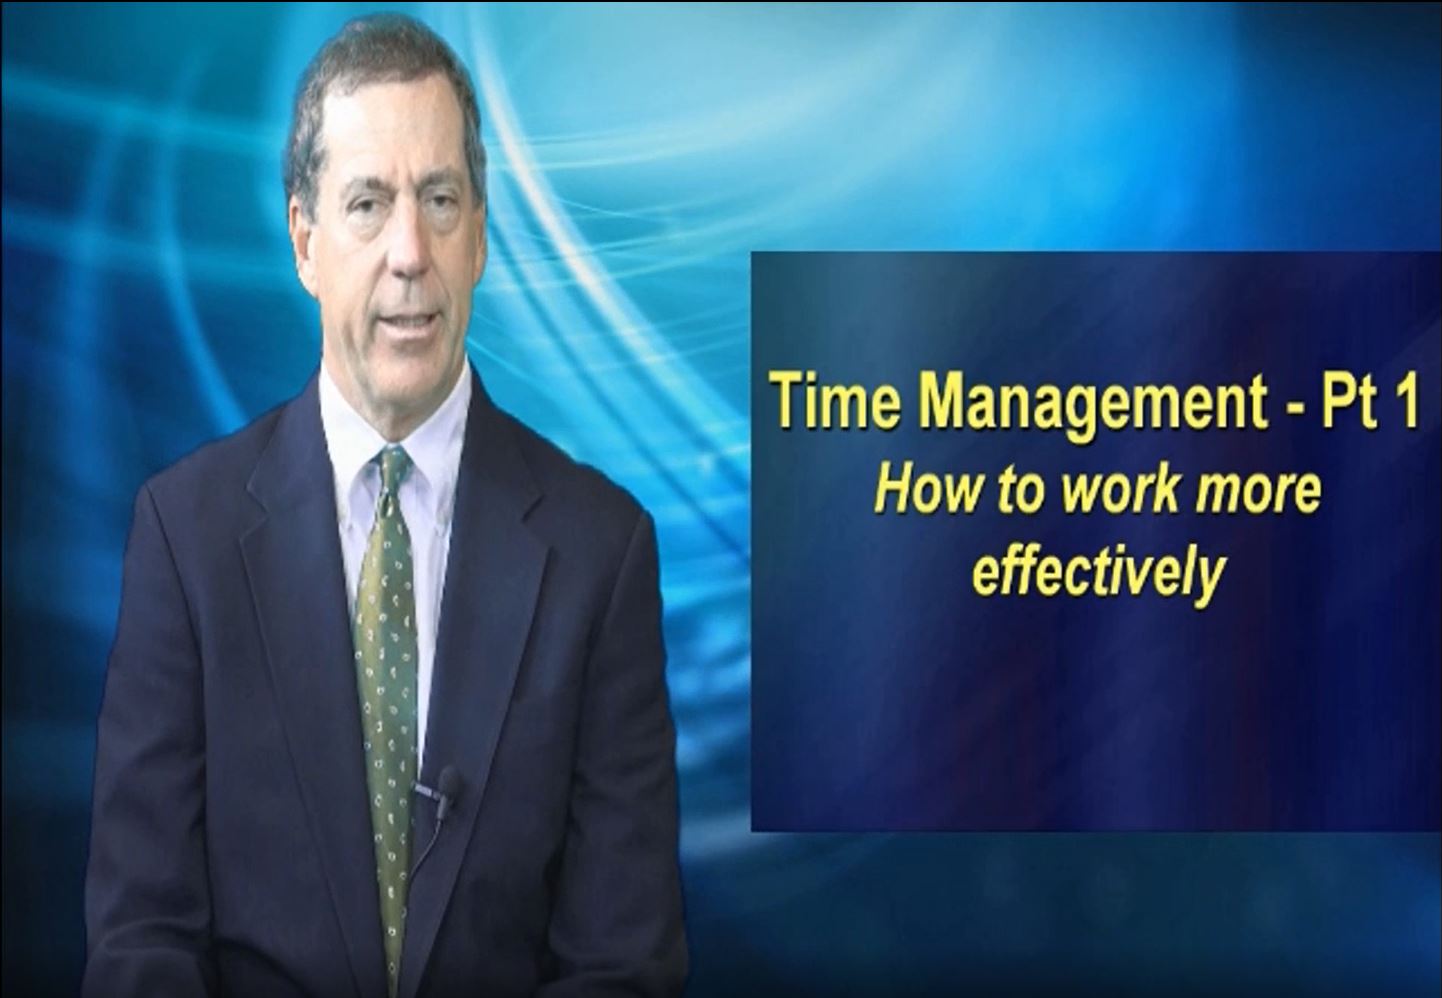 Time Management Part 1